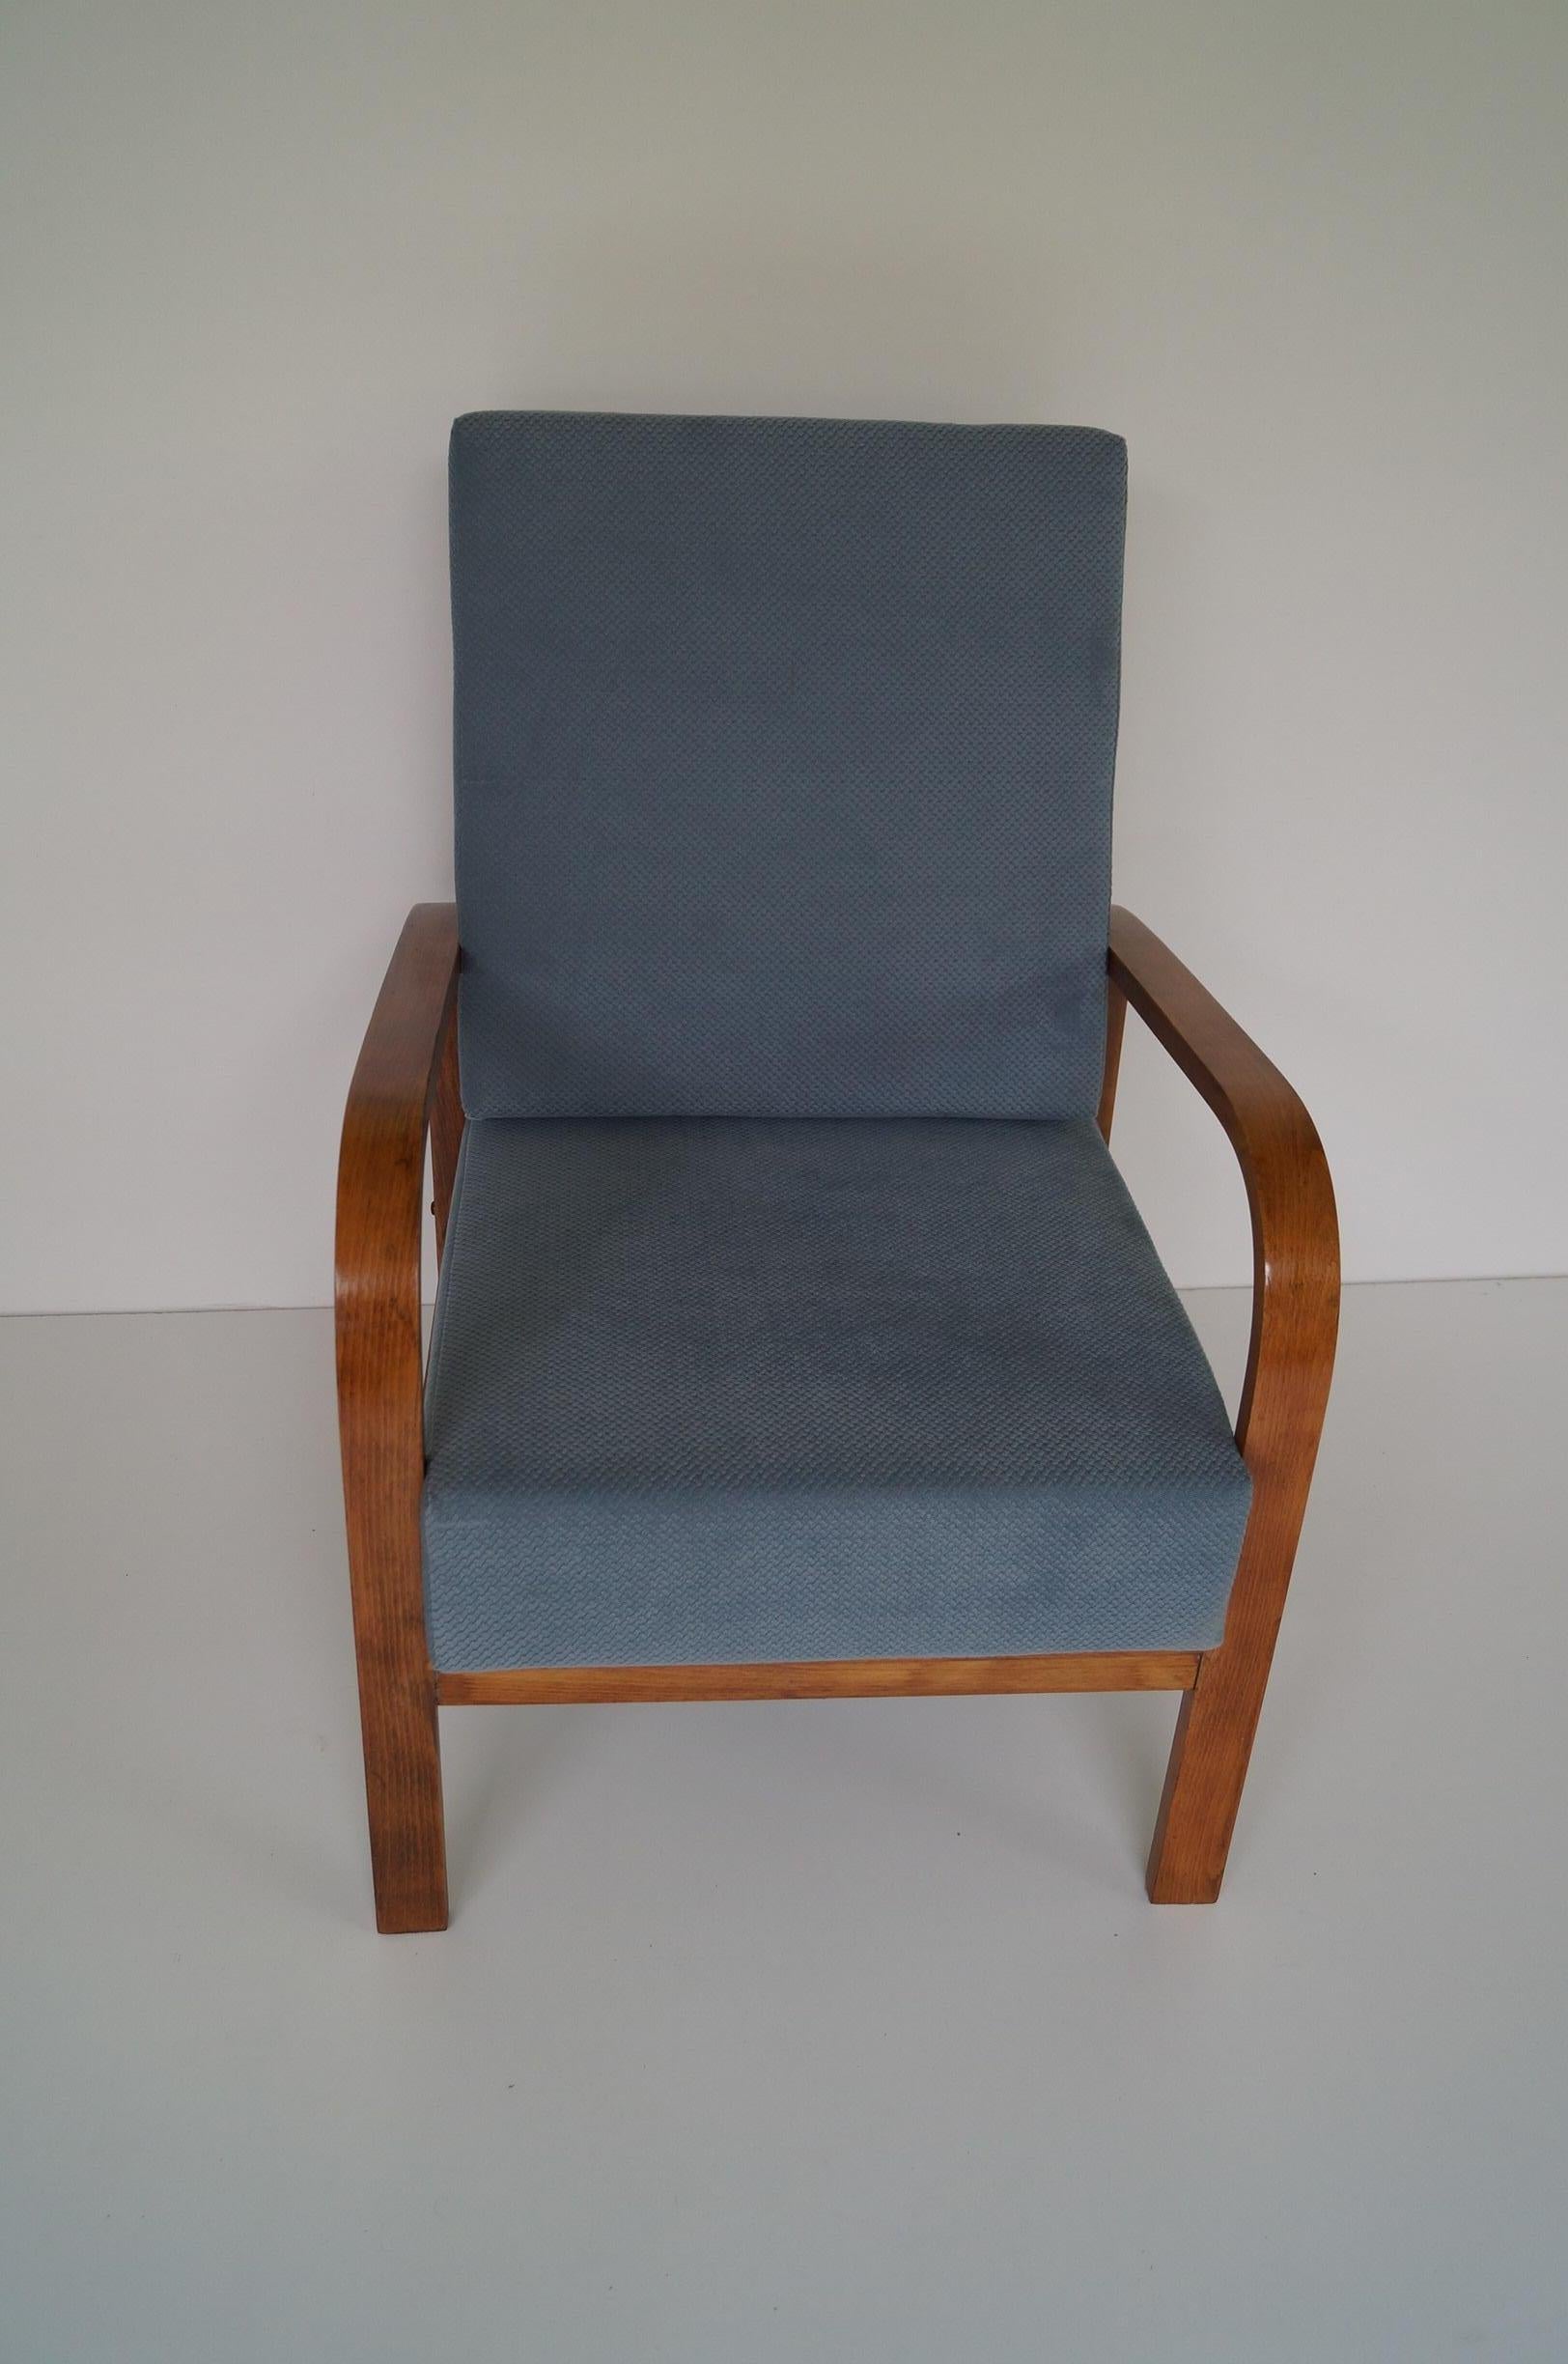 Art Deco Sessel von 1950 
Jedes Möbelstück, das unsere Werkstatt verlässt, wird von Anfang bis Ende einer manuellen Renovierung unterzogen, um den ursprünglichen Zustand von vor vielen Jahren wiederherzustellen (es wurde bis auf das blanke Furnier